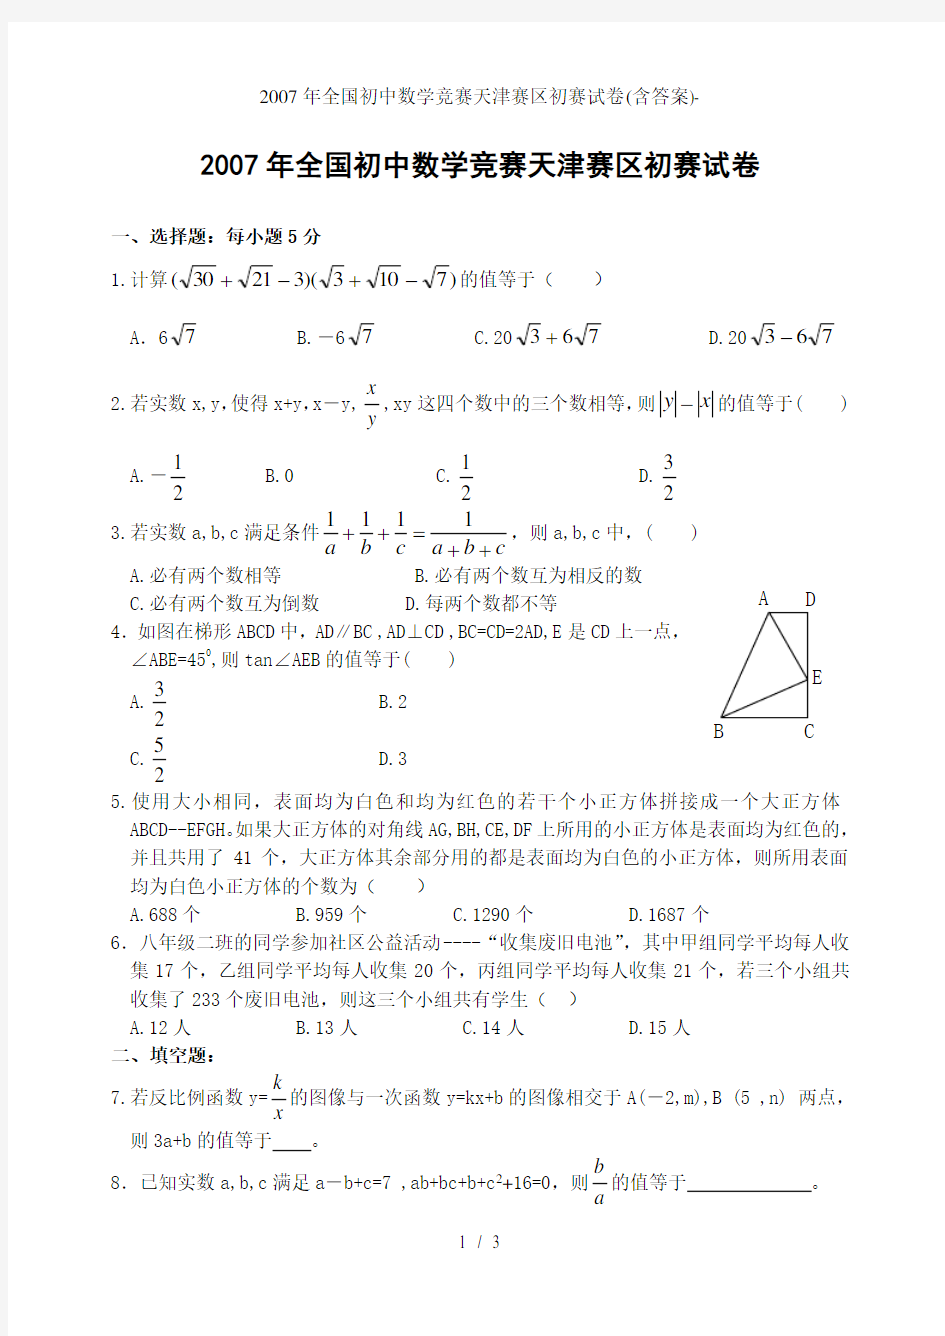 全国初中数学竞赛天津赛区初赛试卷含答案